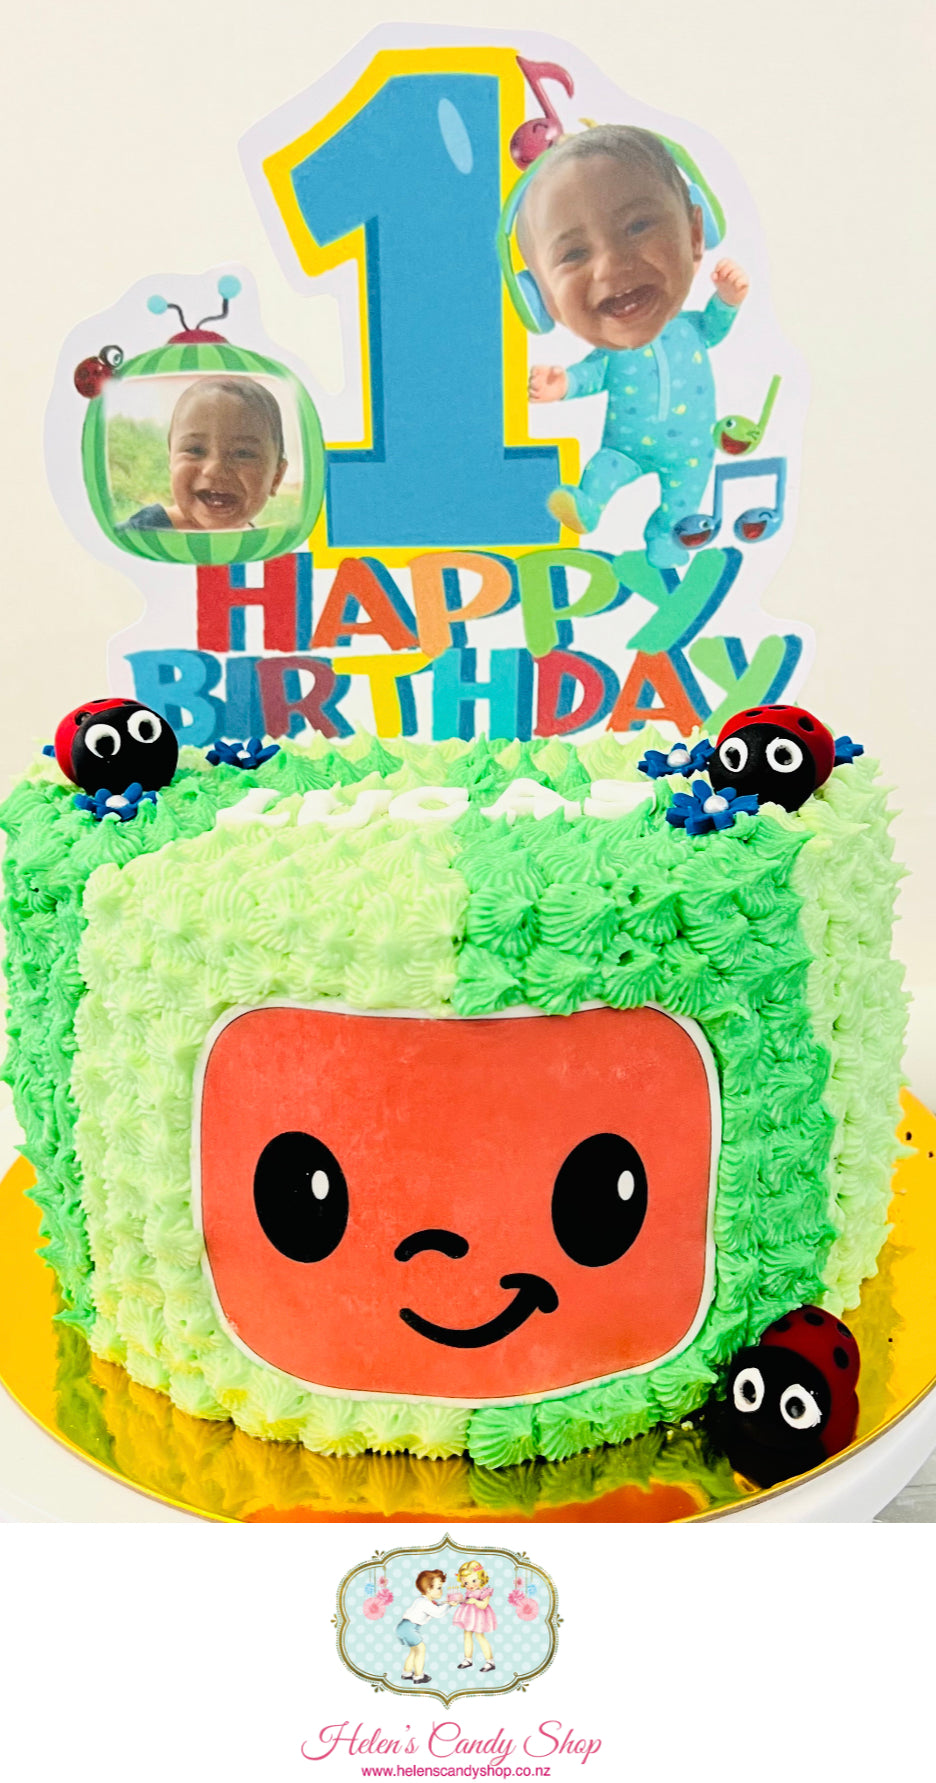 Cocomelon Cakes | Cocomelon Theme Birthday Cake Designs